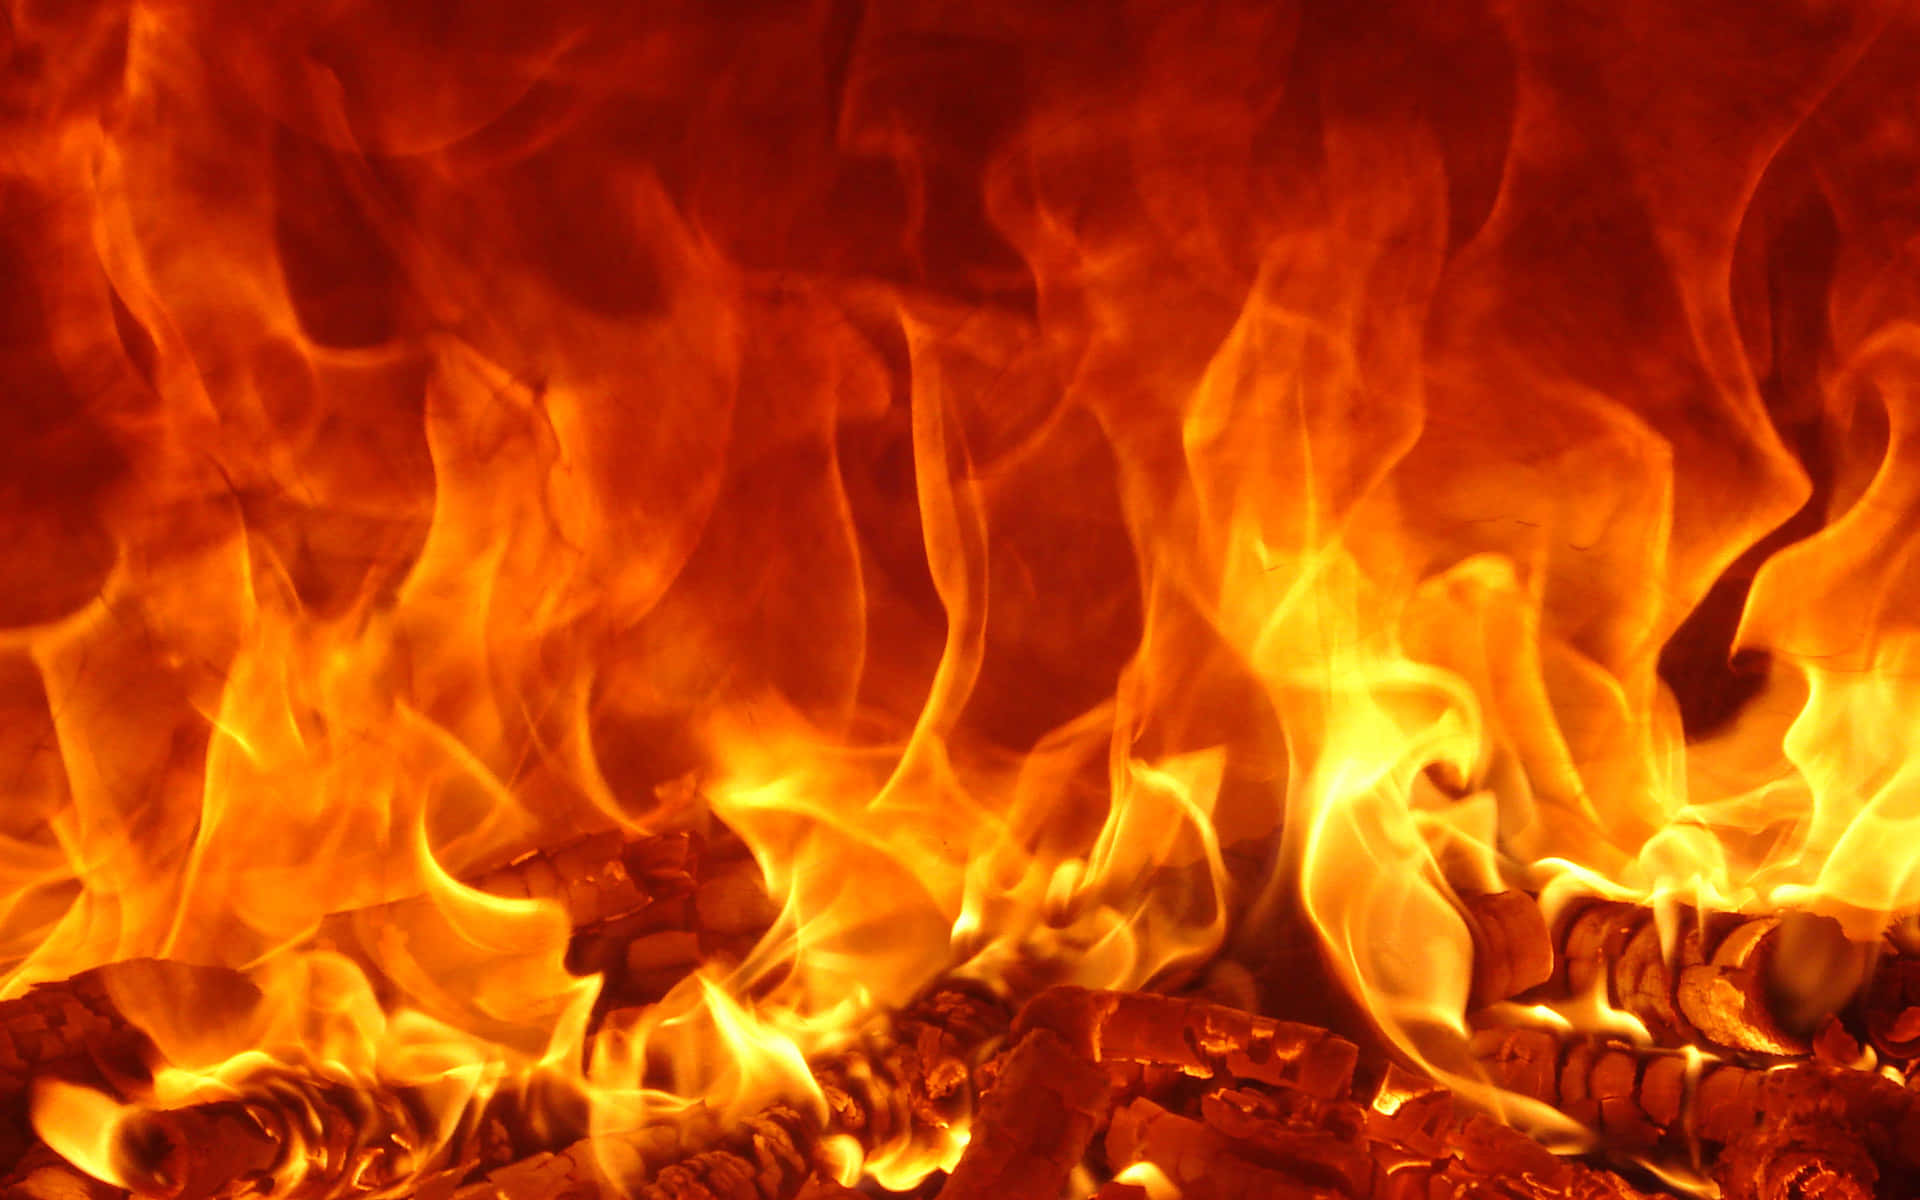 Burning Hot Fire Pfp Flmaes Wallpaper